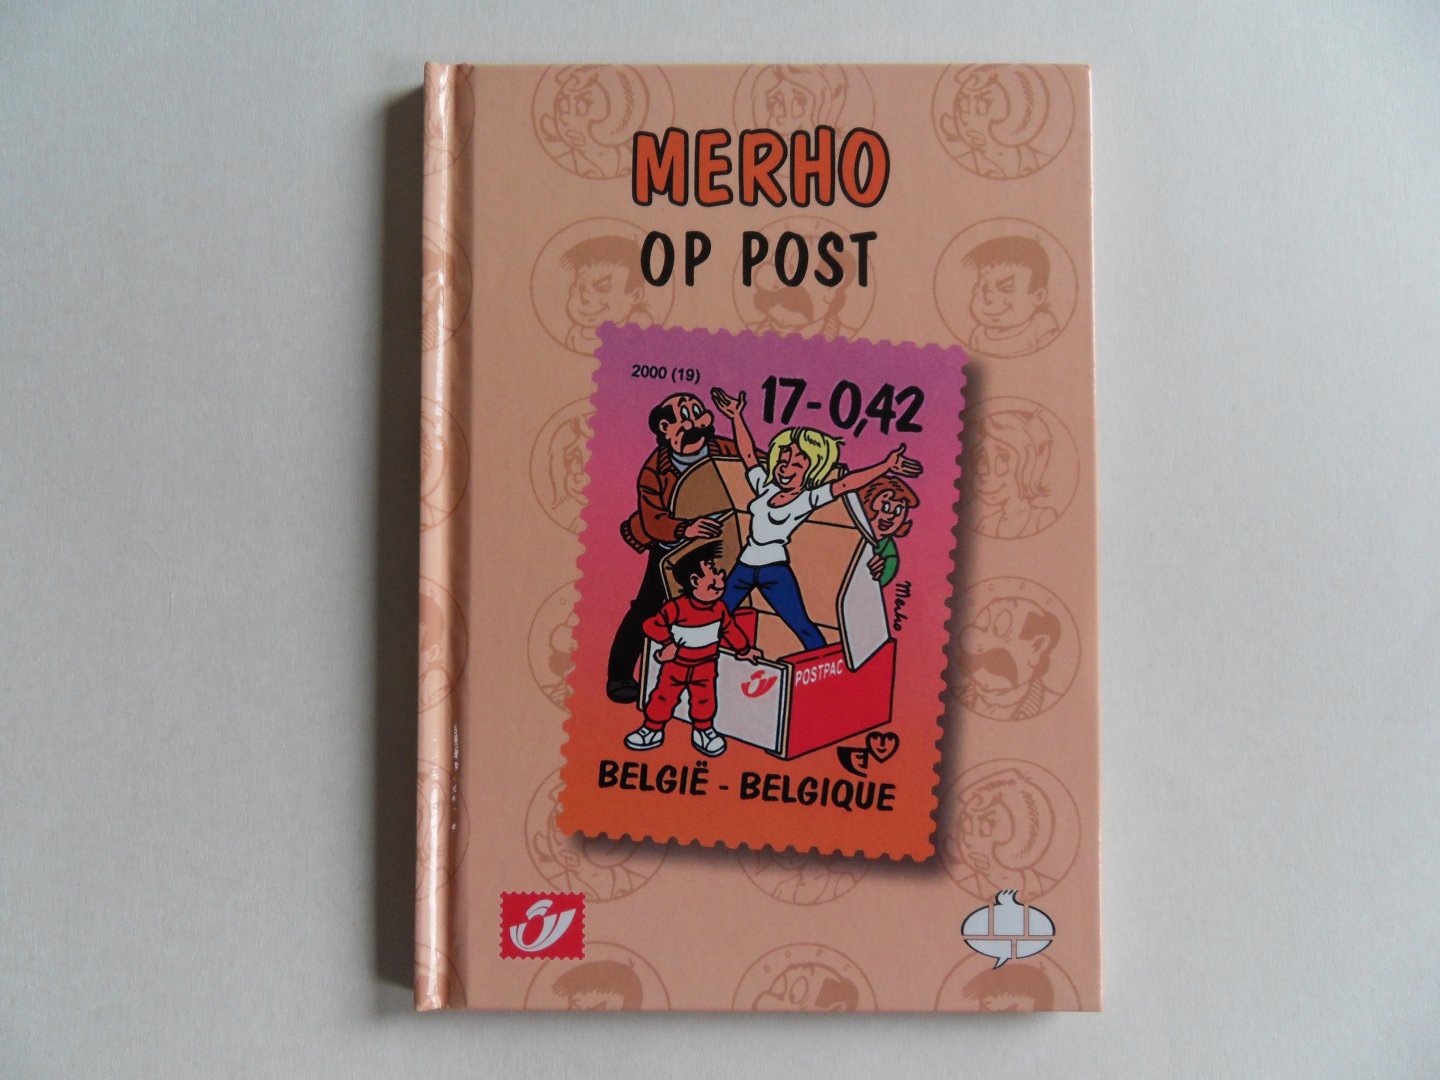 Merhottein, Robert [ pseudoniem Merho ]. - Merho op Post. [ Genummerd exemplaar 651 / 1825 ].